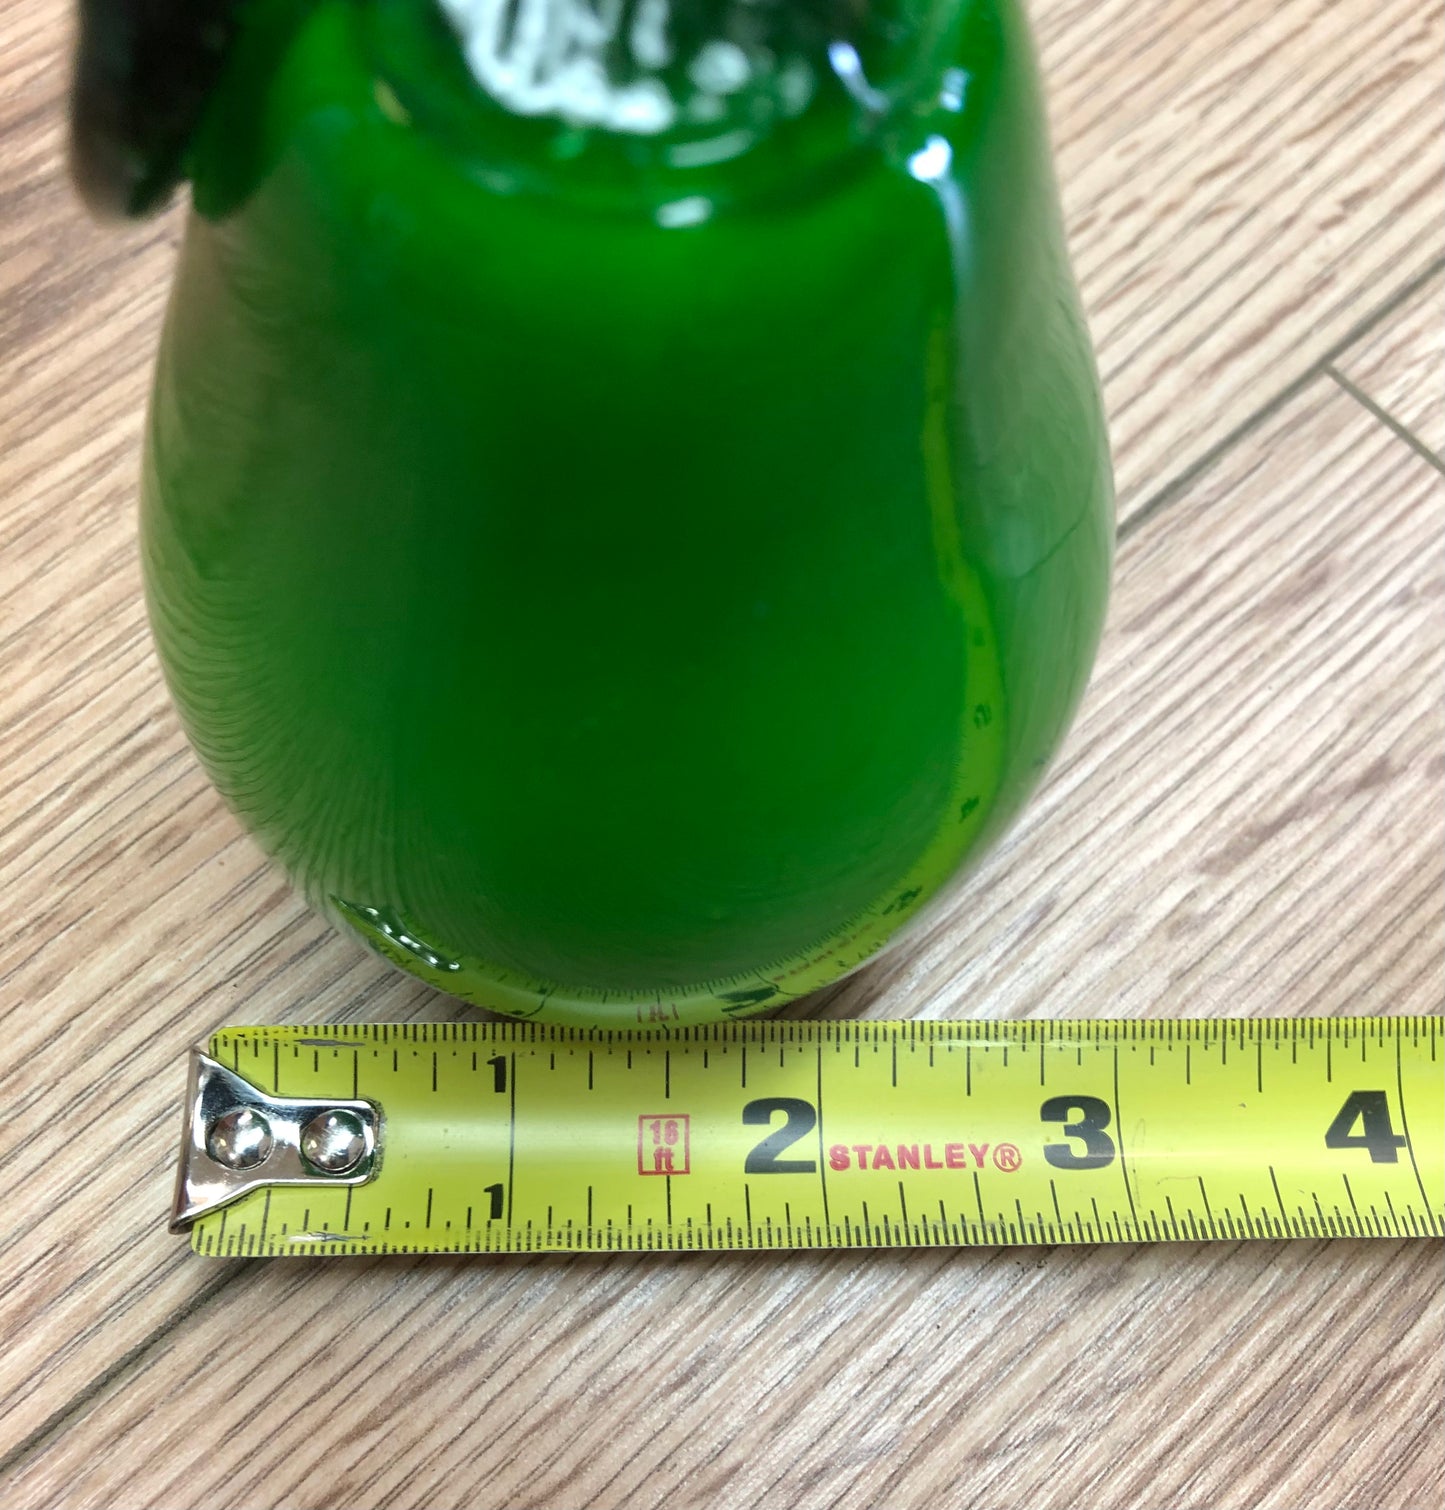 Hand blown Glass Green Pear